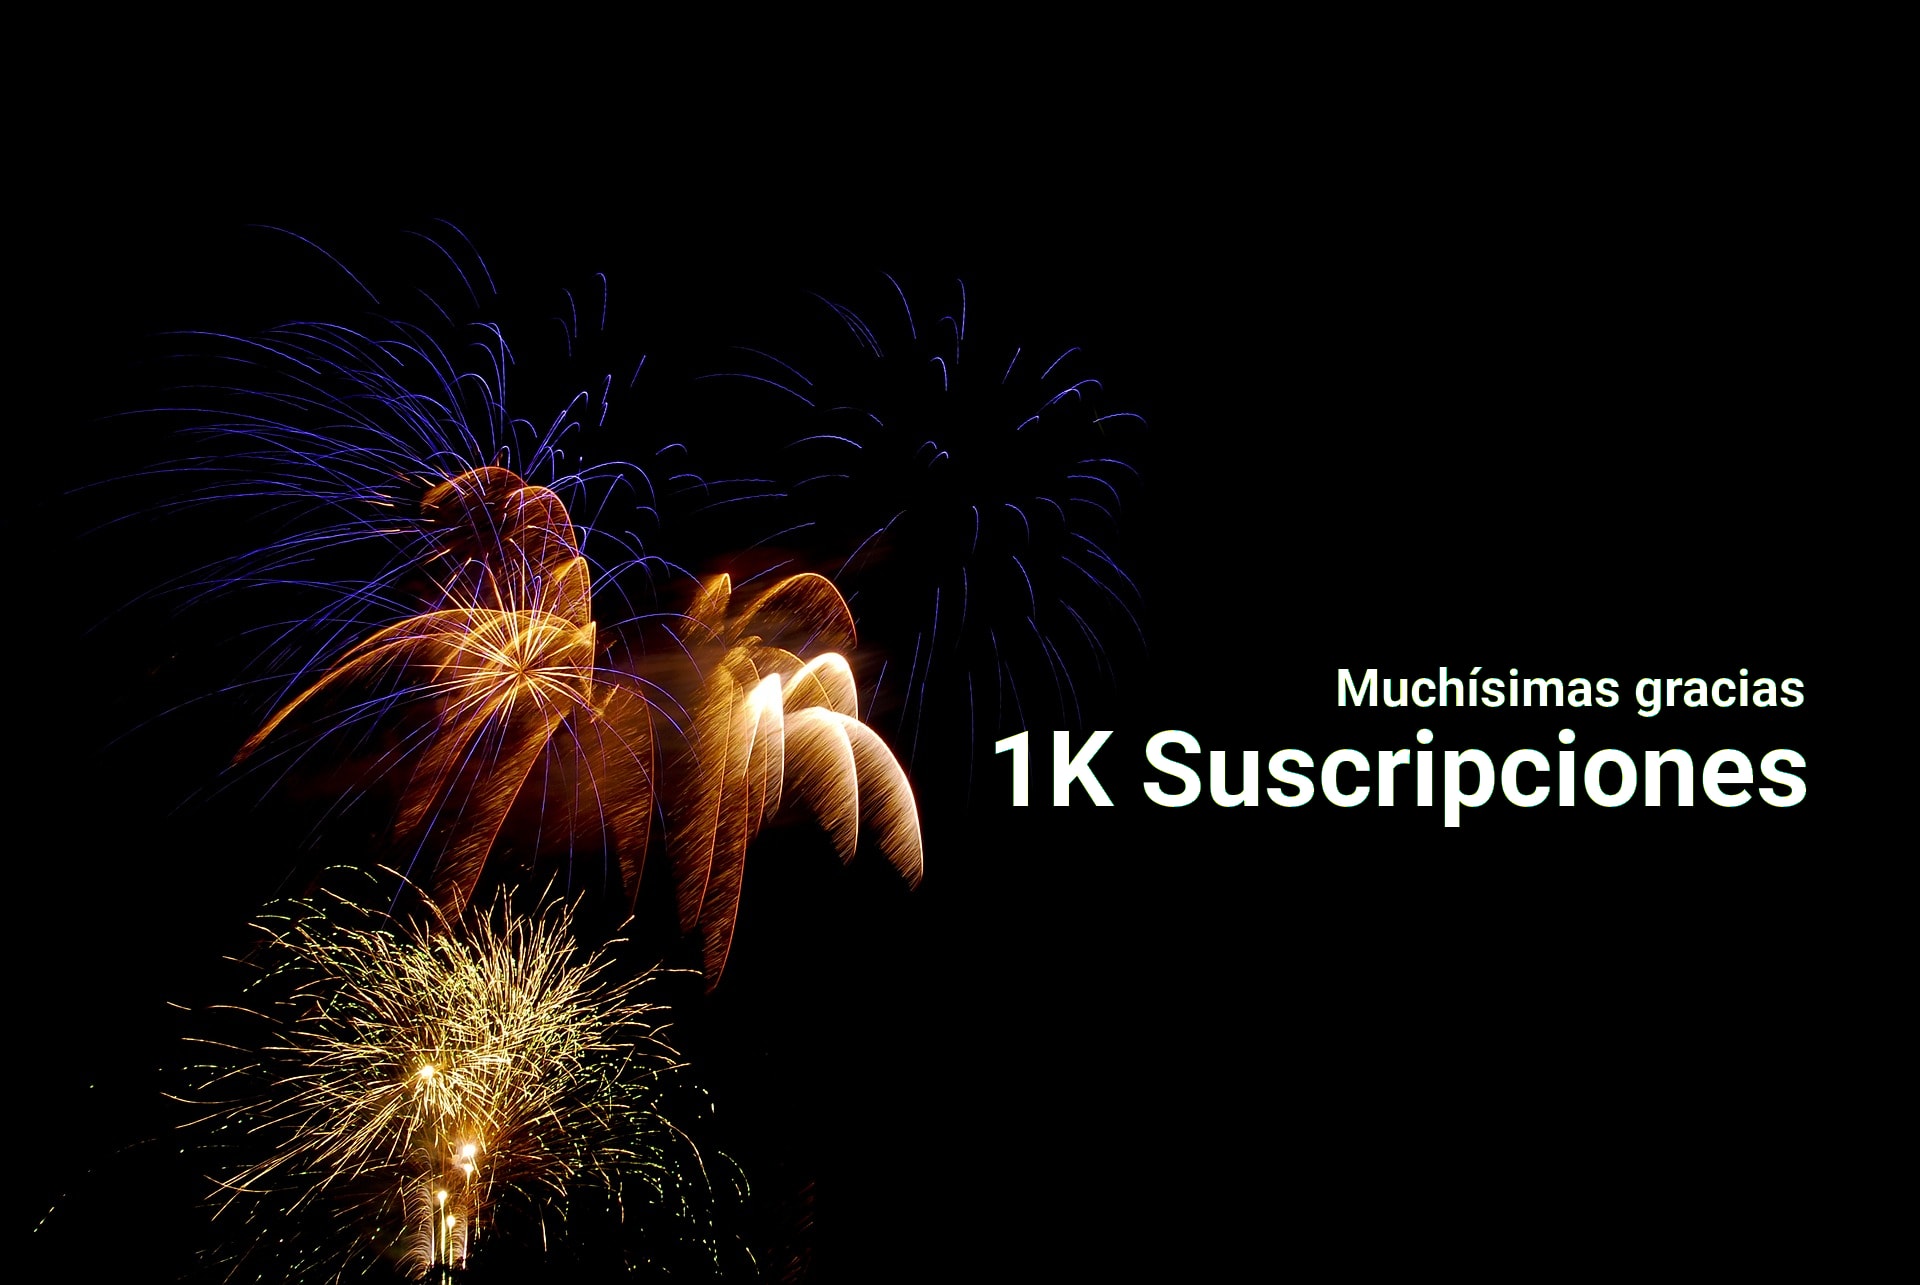 1K de suscriptores en el canal de Youtube.. Gracias!!!